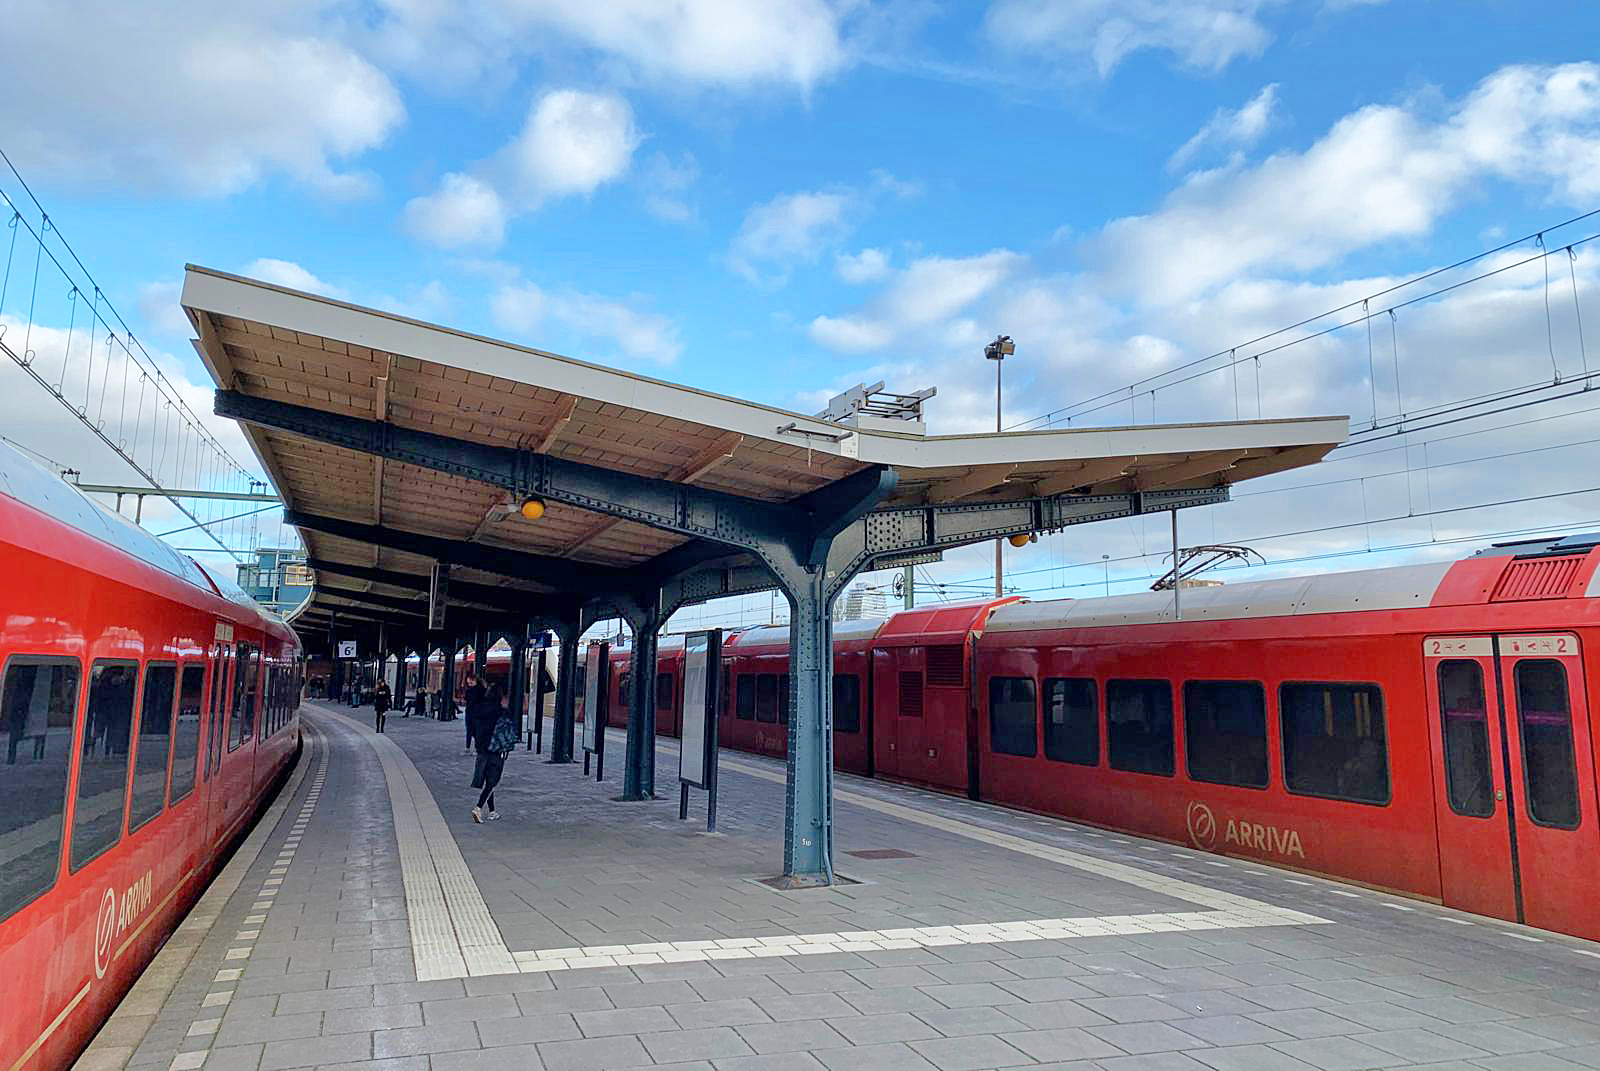 De overkapping op station Groningen die model staat voor de perronoverkapping op station Nienoord Zuid